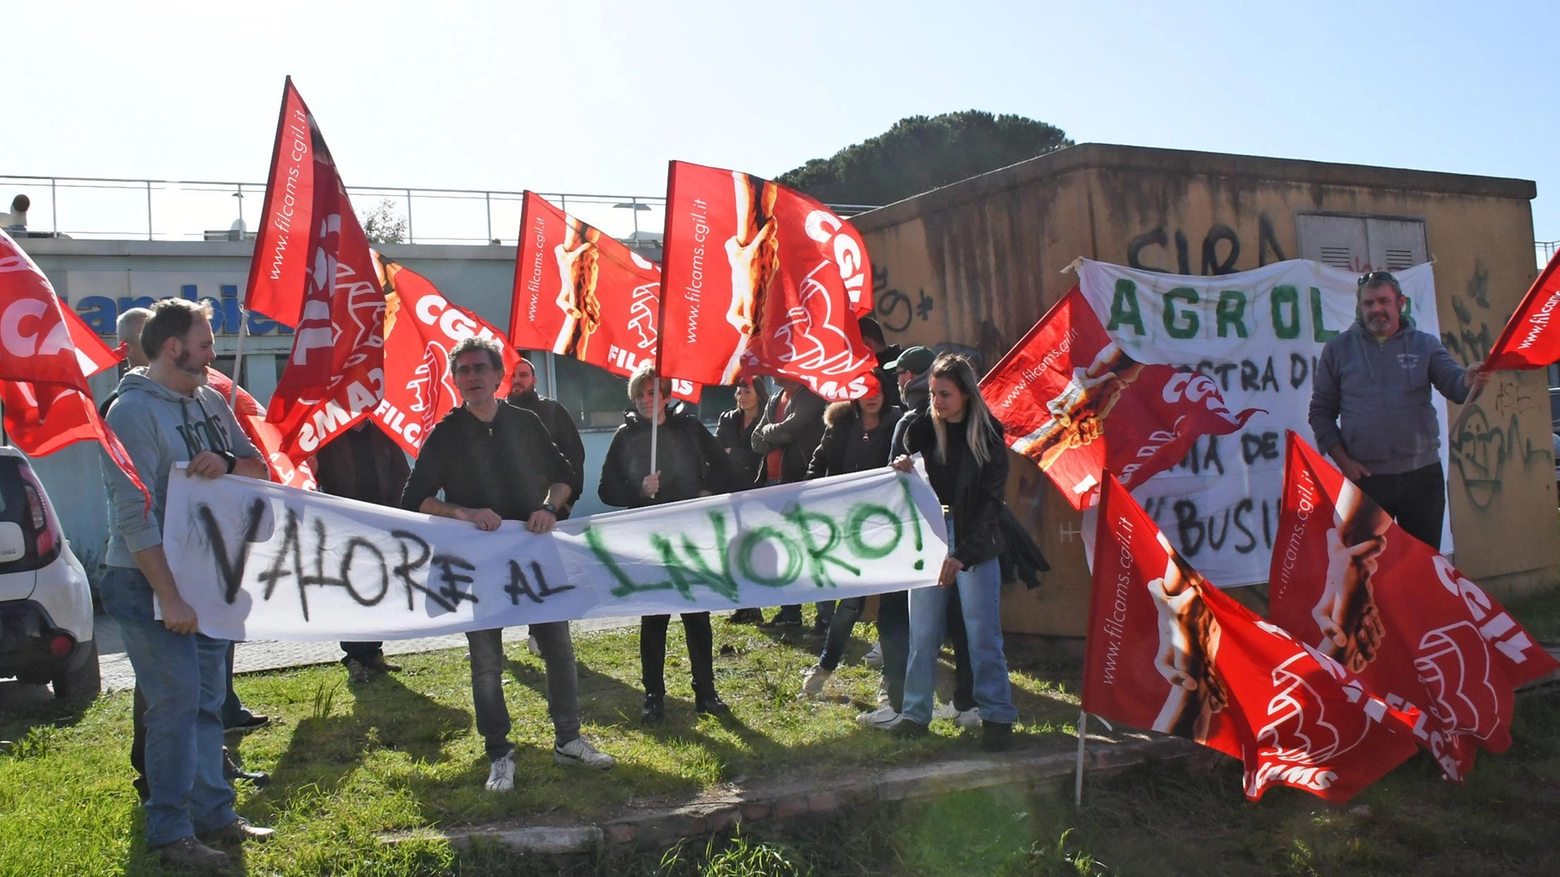 Agrolab, salvato il sito di Nazzano  Trovato l’accordo per i lavoratori  Cinque restano, indennizzo per dodici